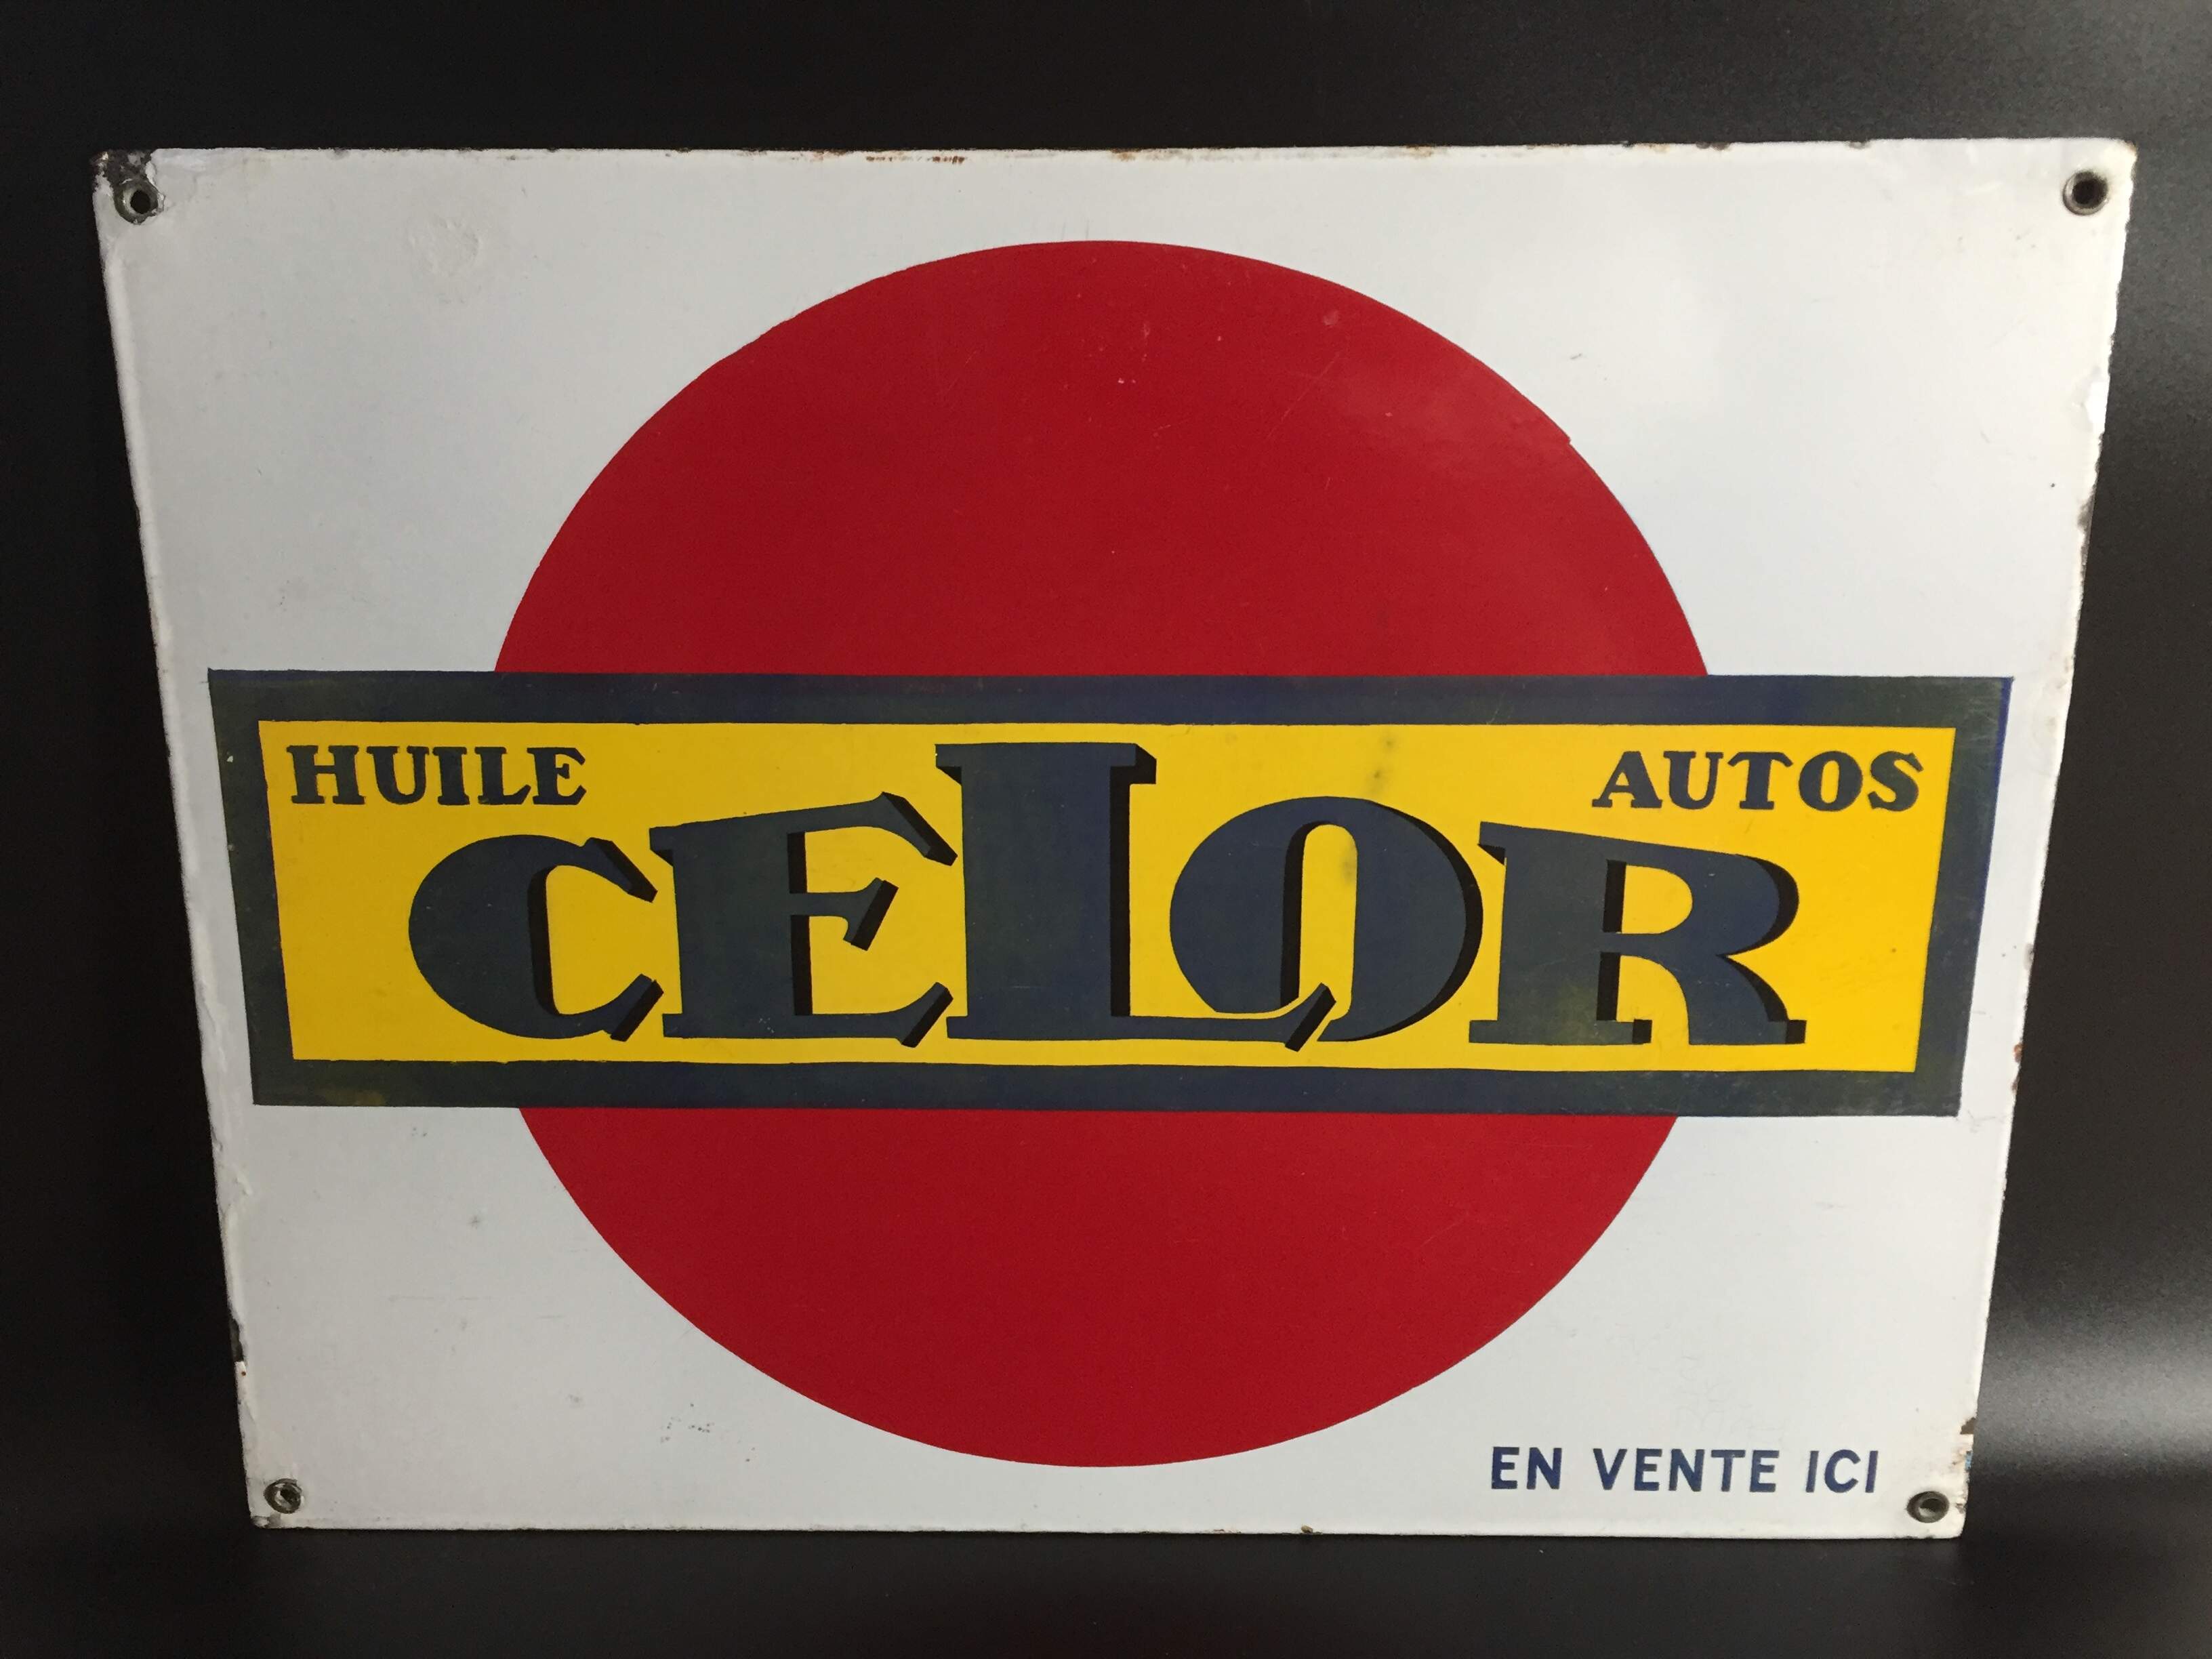 Altes Emailschild Celor Huile pour Autos um ca. 1940